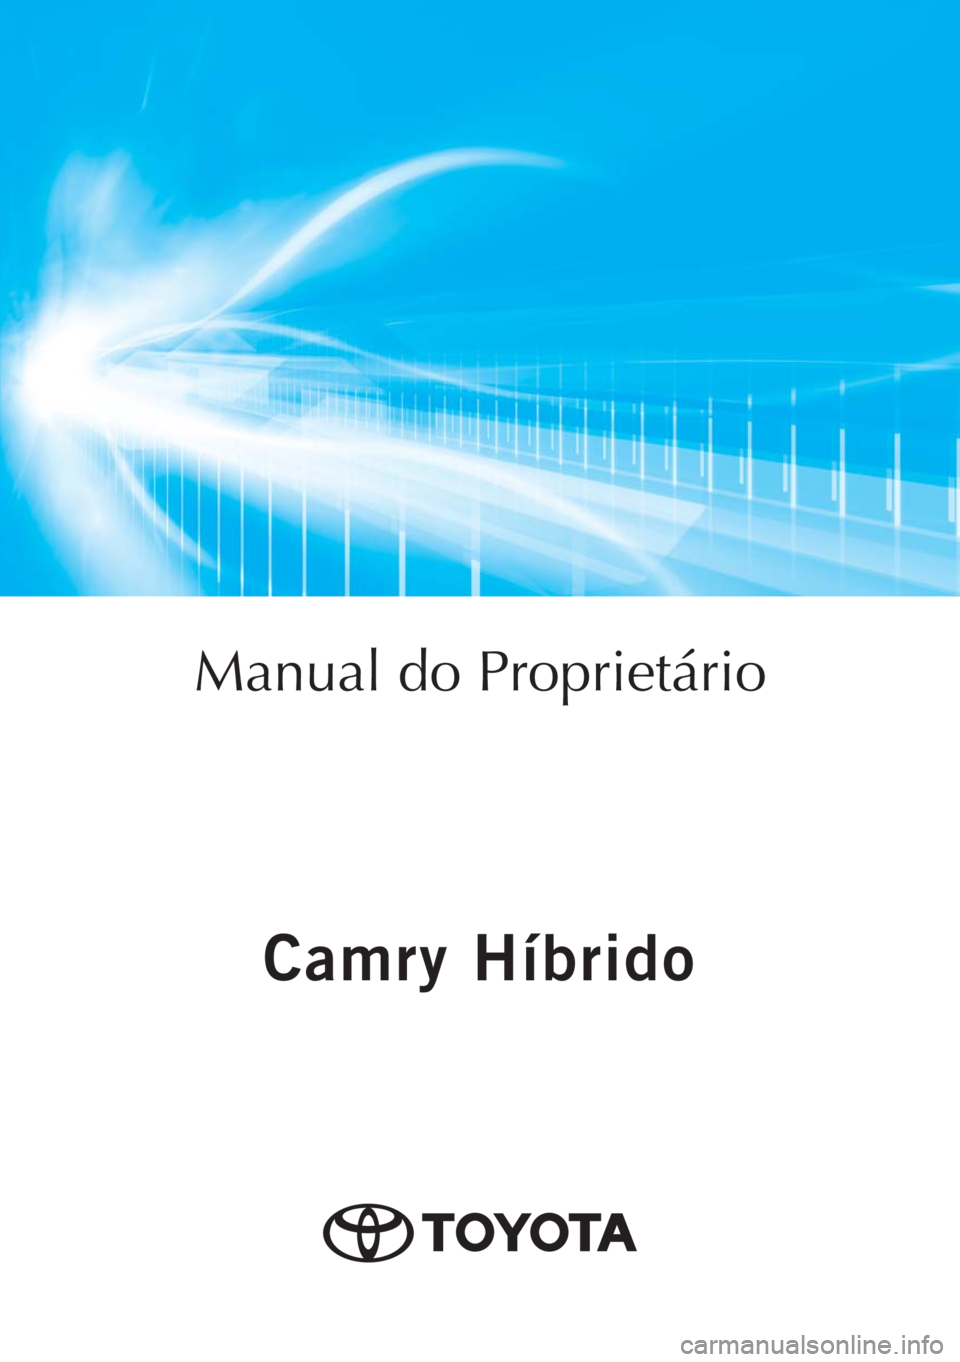 TOYOTA CAMRY 2020  Manual de utilização (in Portuguese) Camry Híbrido
Camry Híbrido
Manual do Proprietário
Mod. OM33E11PT
Public. N.º OM33E11E
ORGAL-PORTO 